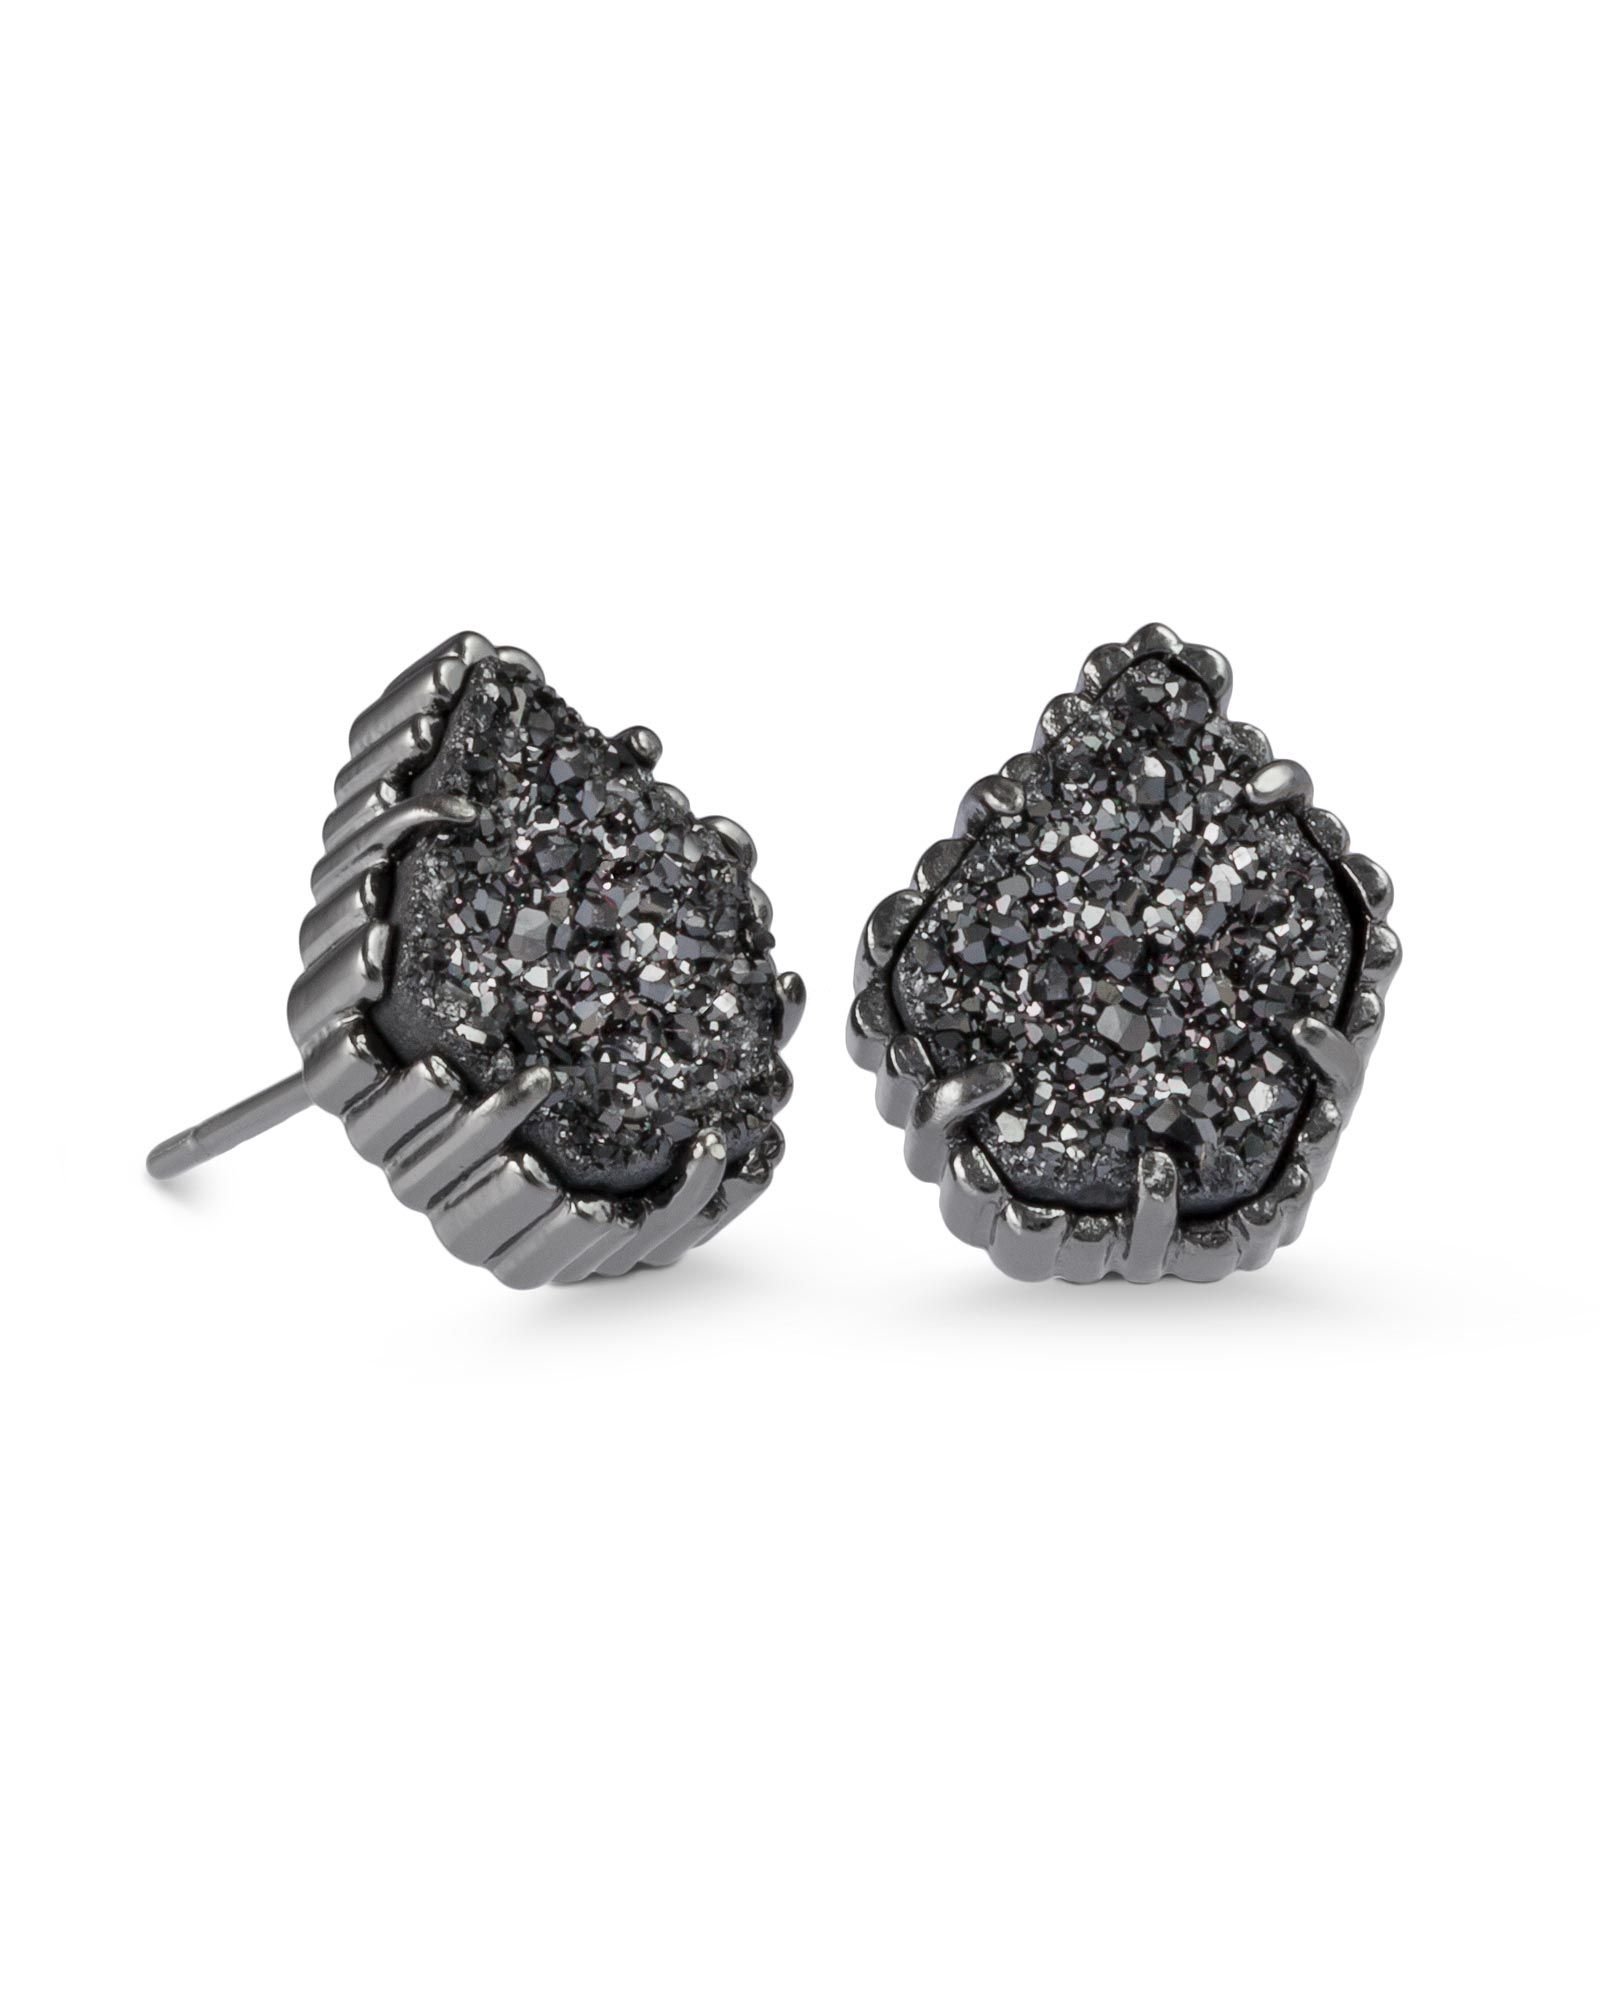 Tessa Stud Earrings in Black Drusy | Kendra Scott